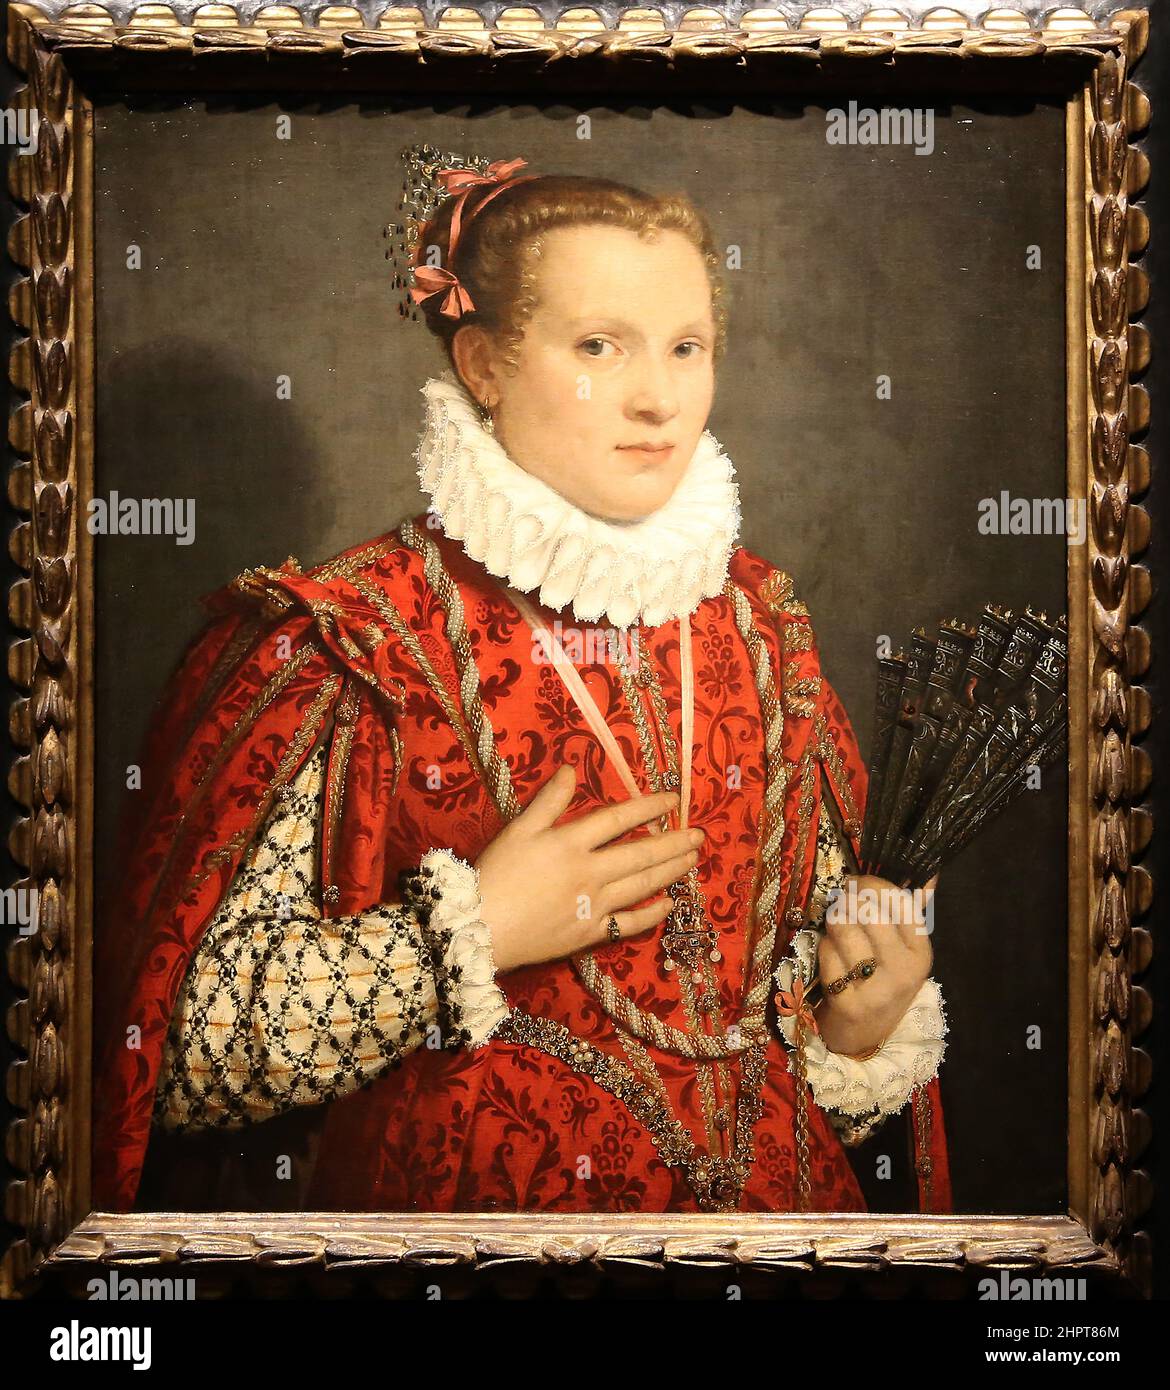 Portrait. Jeune femme tenant un fan. Par Giovanni Battista Moroni (1520-1579). Bergame, Italie, c. 1575. Huile sur toile. Rijksmuseum. Amsterdam. Banque D'Images